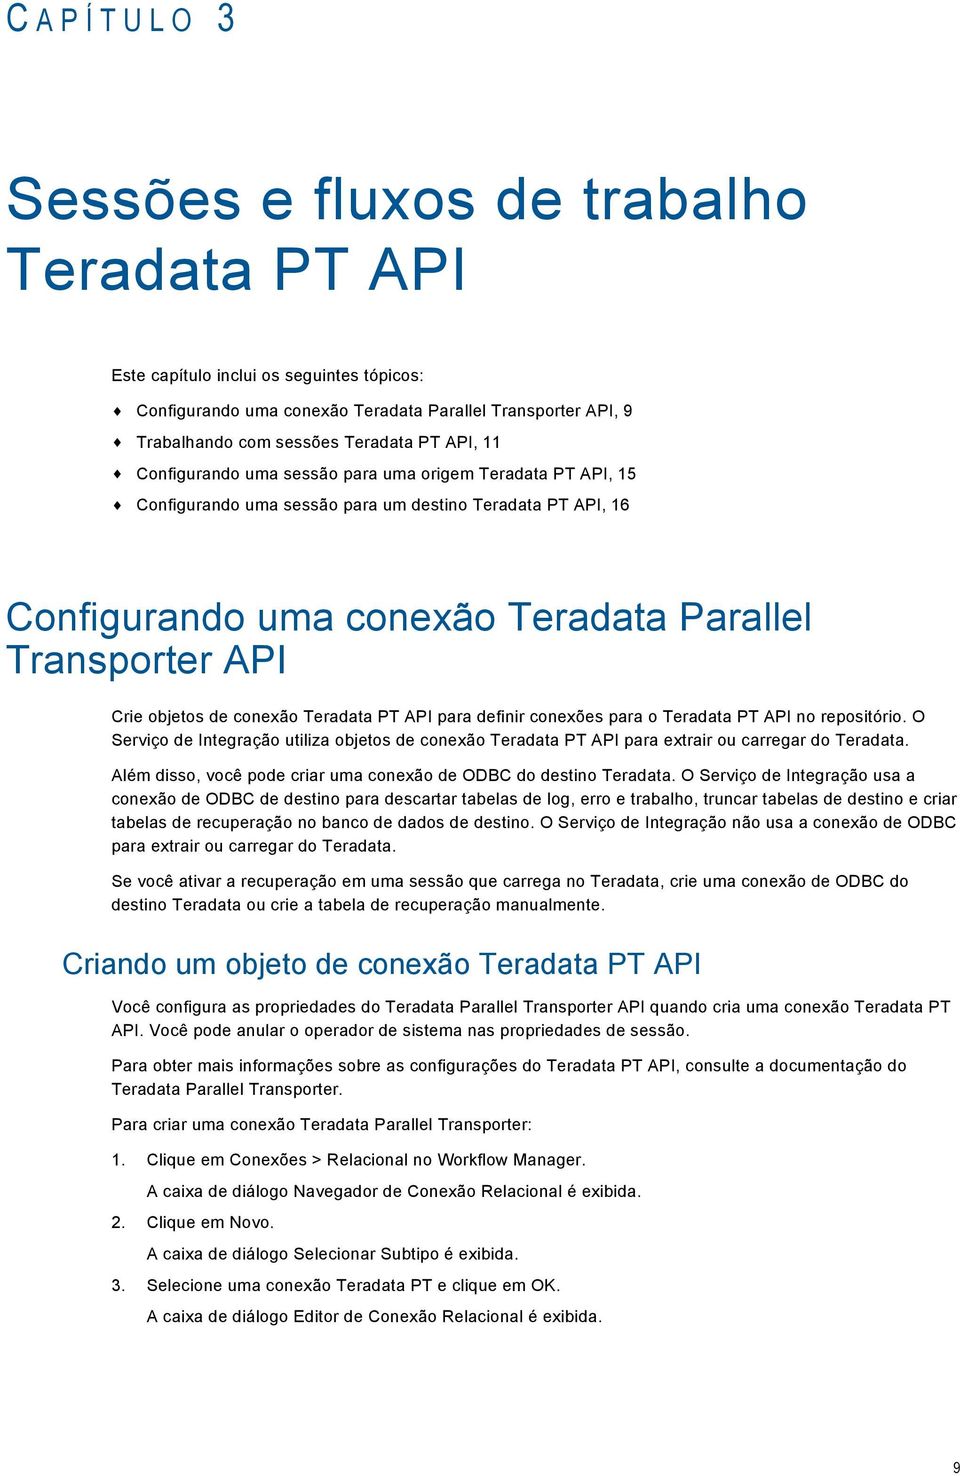 Crie objetos de conexão Teradata PT API para definir conexões para o Teradata PT API no repositório.